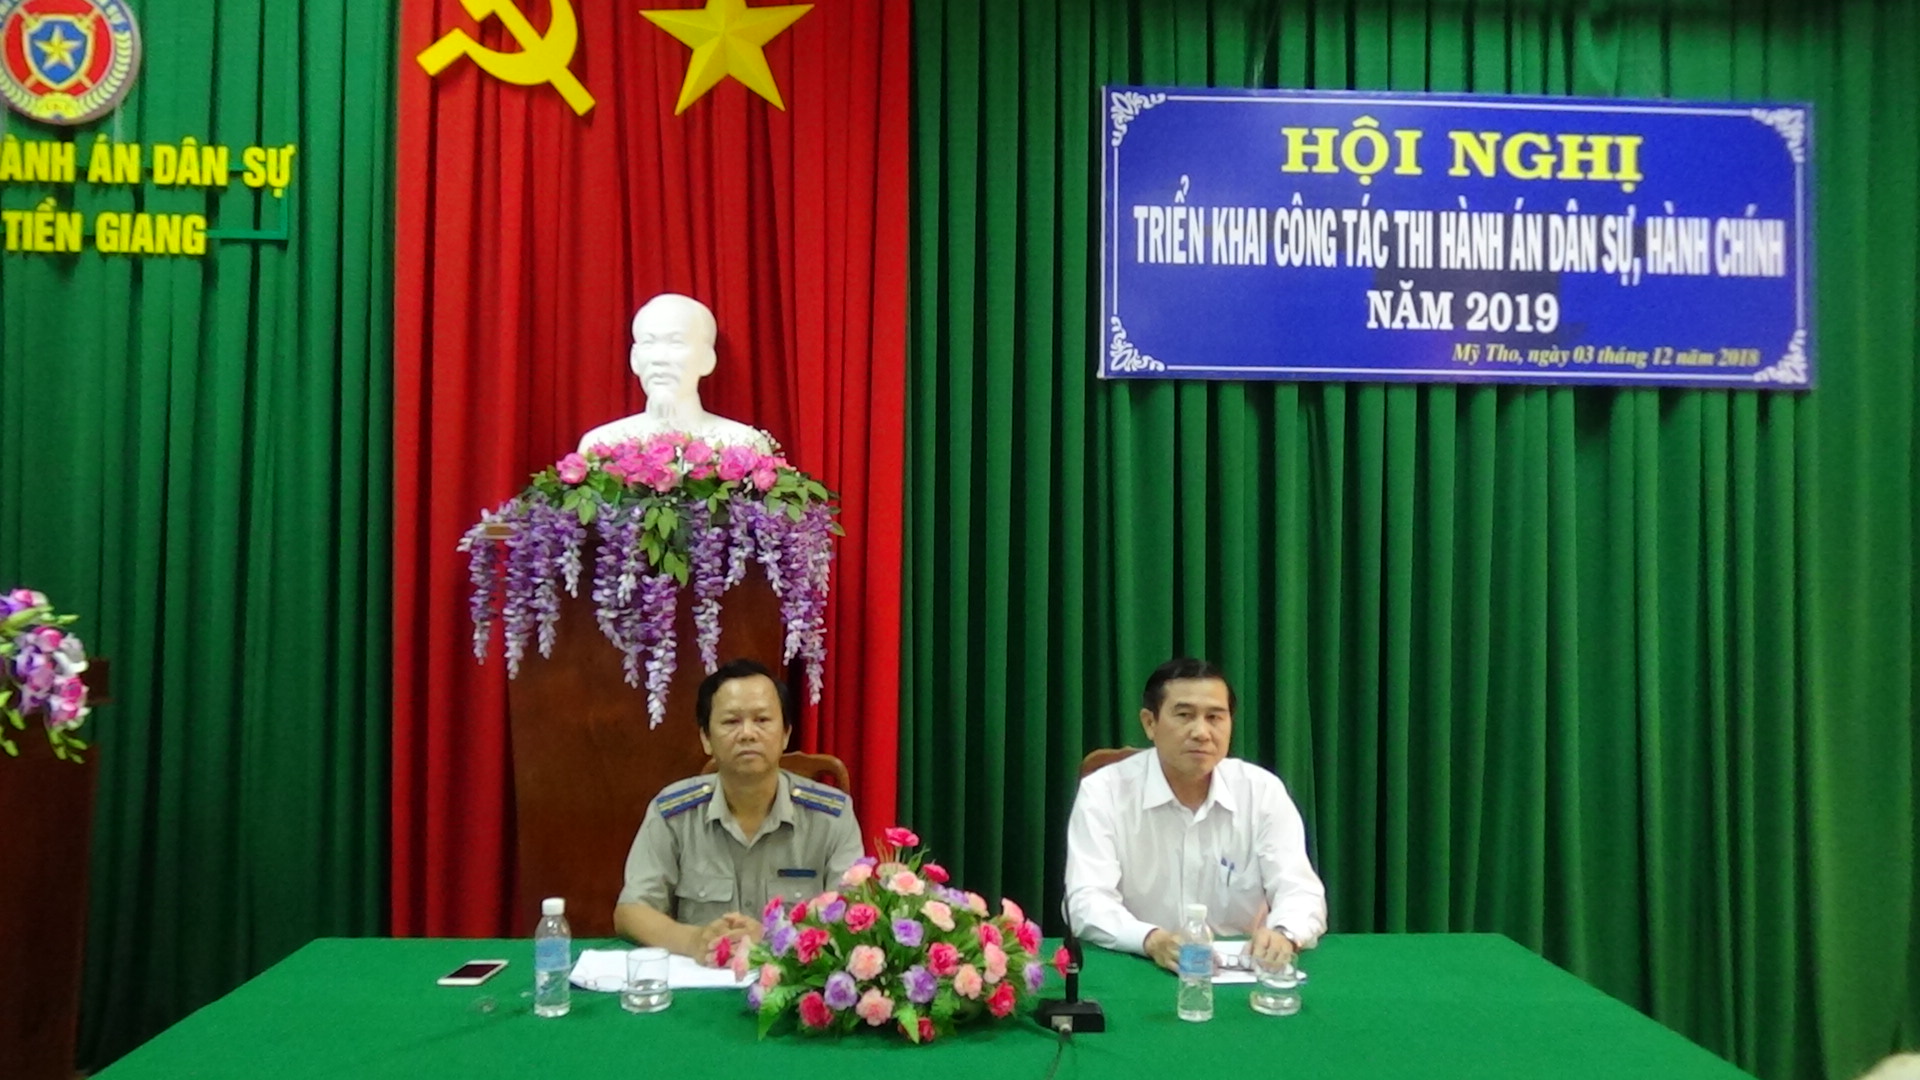 Cục Thi hành án dân sự tỉnh Tiền Giang tổ chức Hội nghị triển khai công tác thi hành án dân sự, theo dõi thi hành án hành chính năm 2019